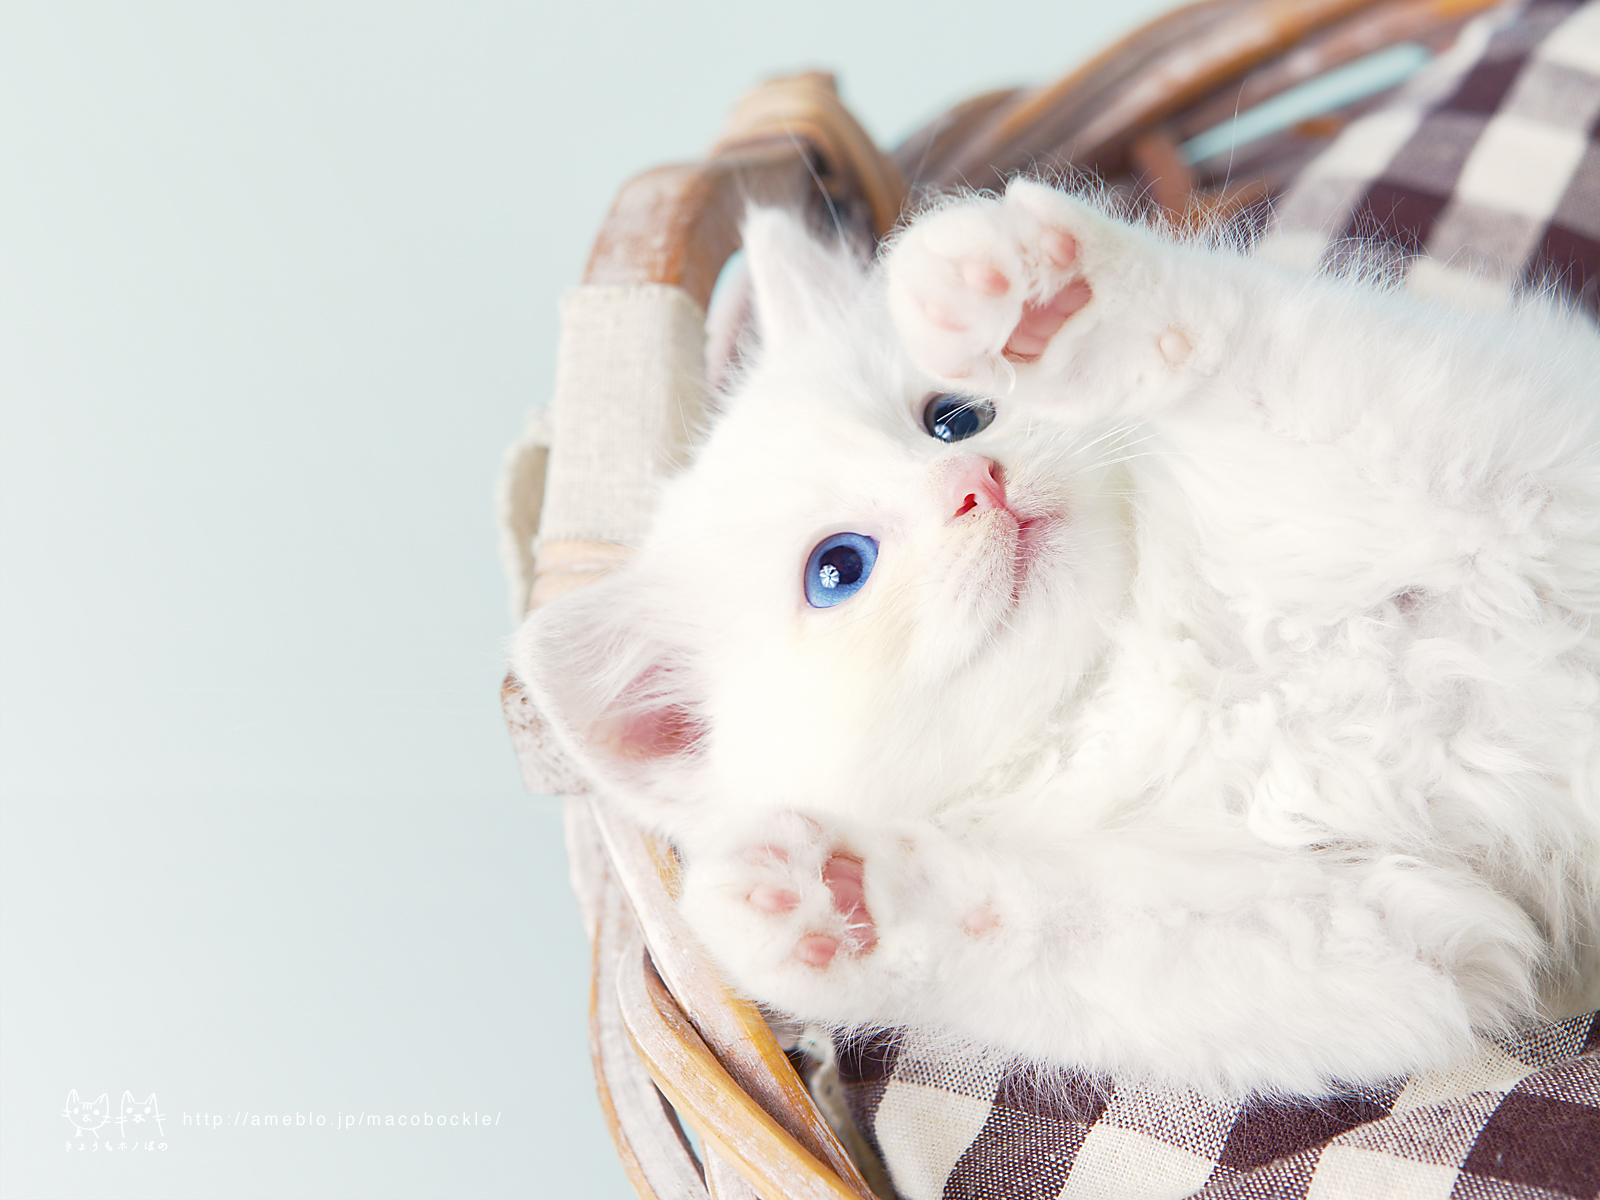 デスクトップ壁紙 カレンダー ミニぼのさん 猫 女子向け 可愛い ガーリー系なpcデスクトップ壁紙 画像大量 180 Naver まとめ